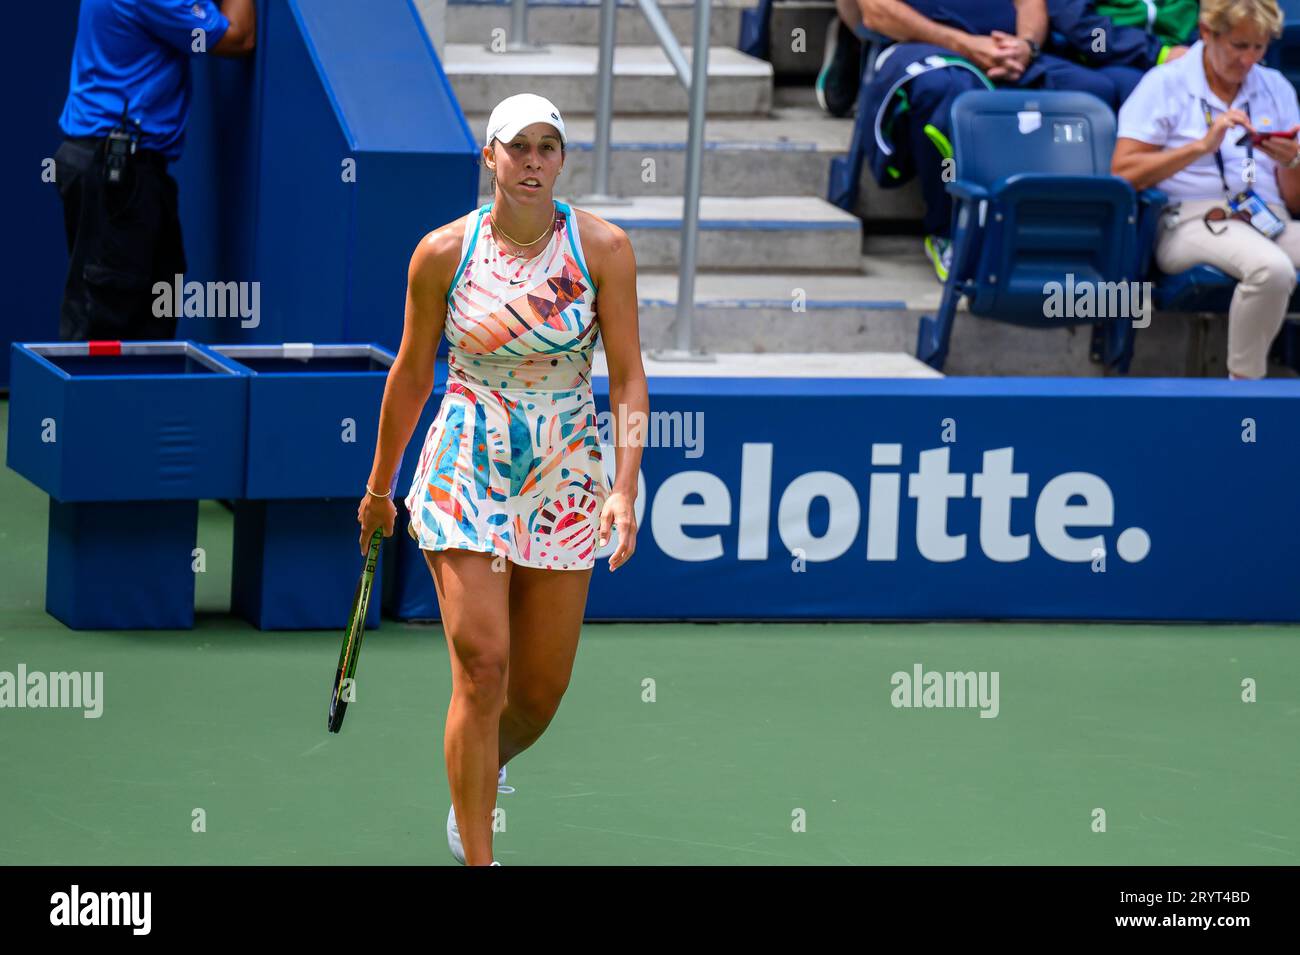 Eine junge Frau in einem Tennisoutfit ist mitten auf dem Platz, Schläger in der Hand, bereit, einen Ball zu schlagen Stockfoto